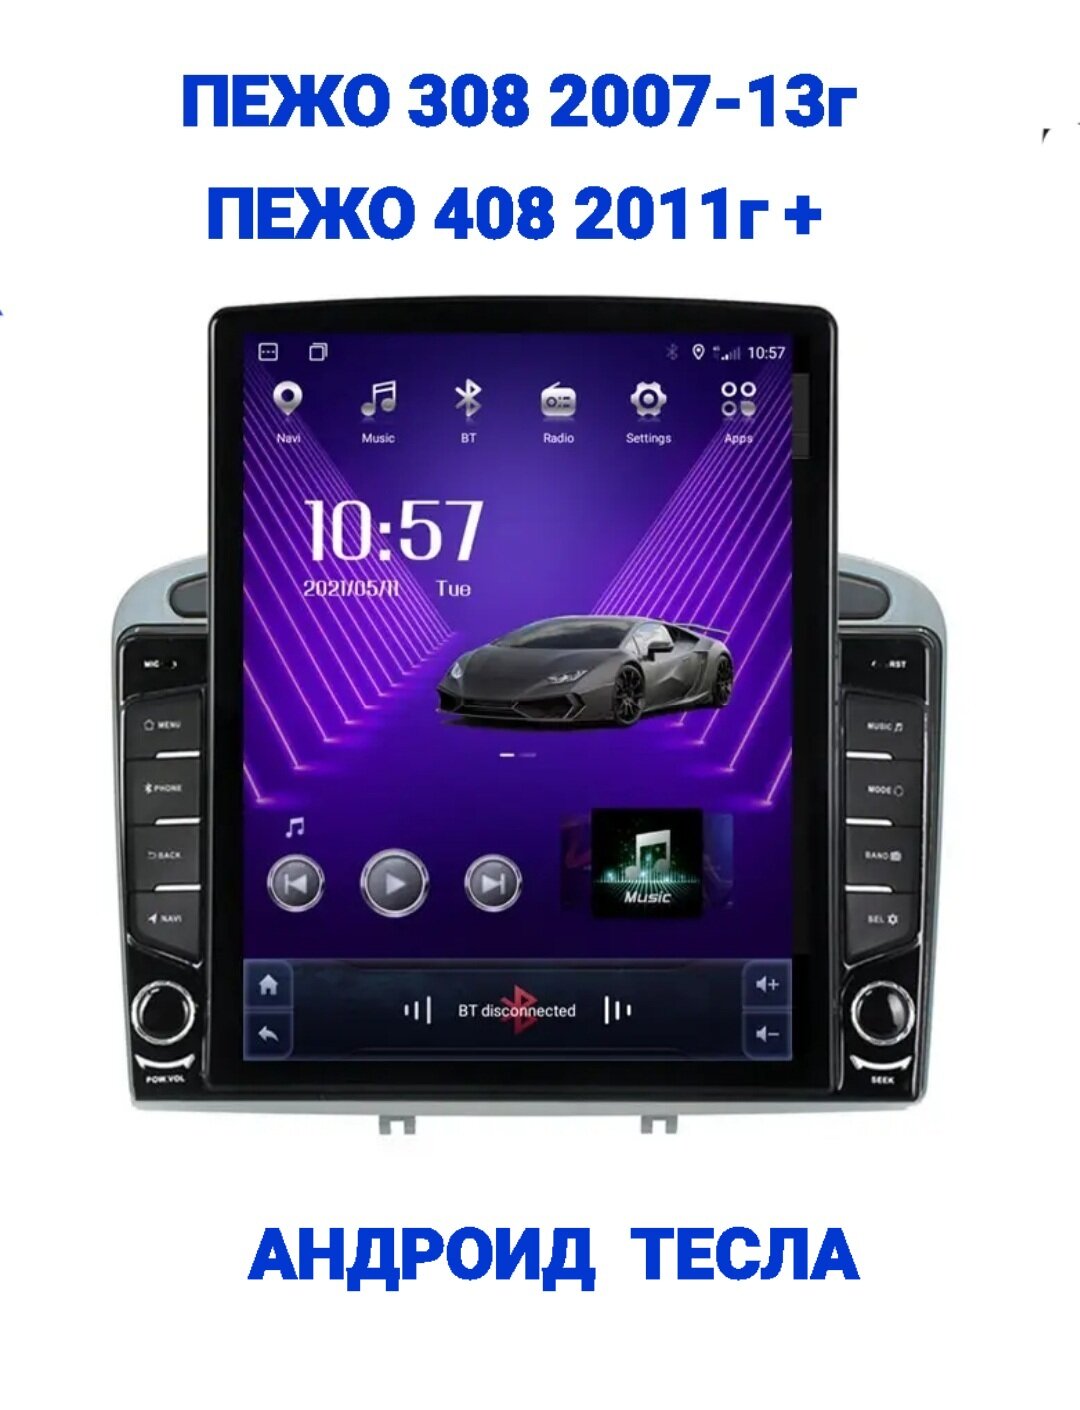 Магнитола Тесла Пионер (Tesla Pioneer) WiFi, GPS, USB, Блютуз, CarPlay, андроид 14, для Пежо (Peugeot) 308 ,408